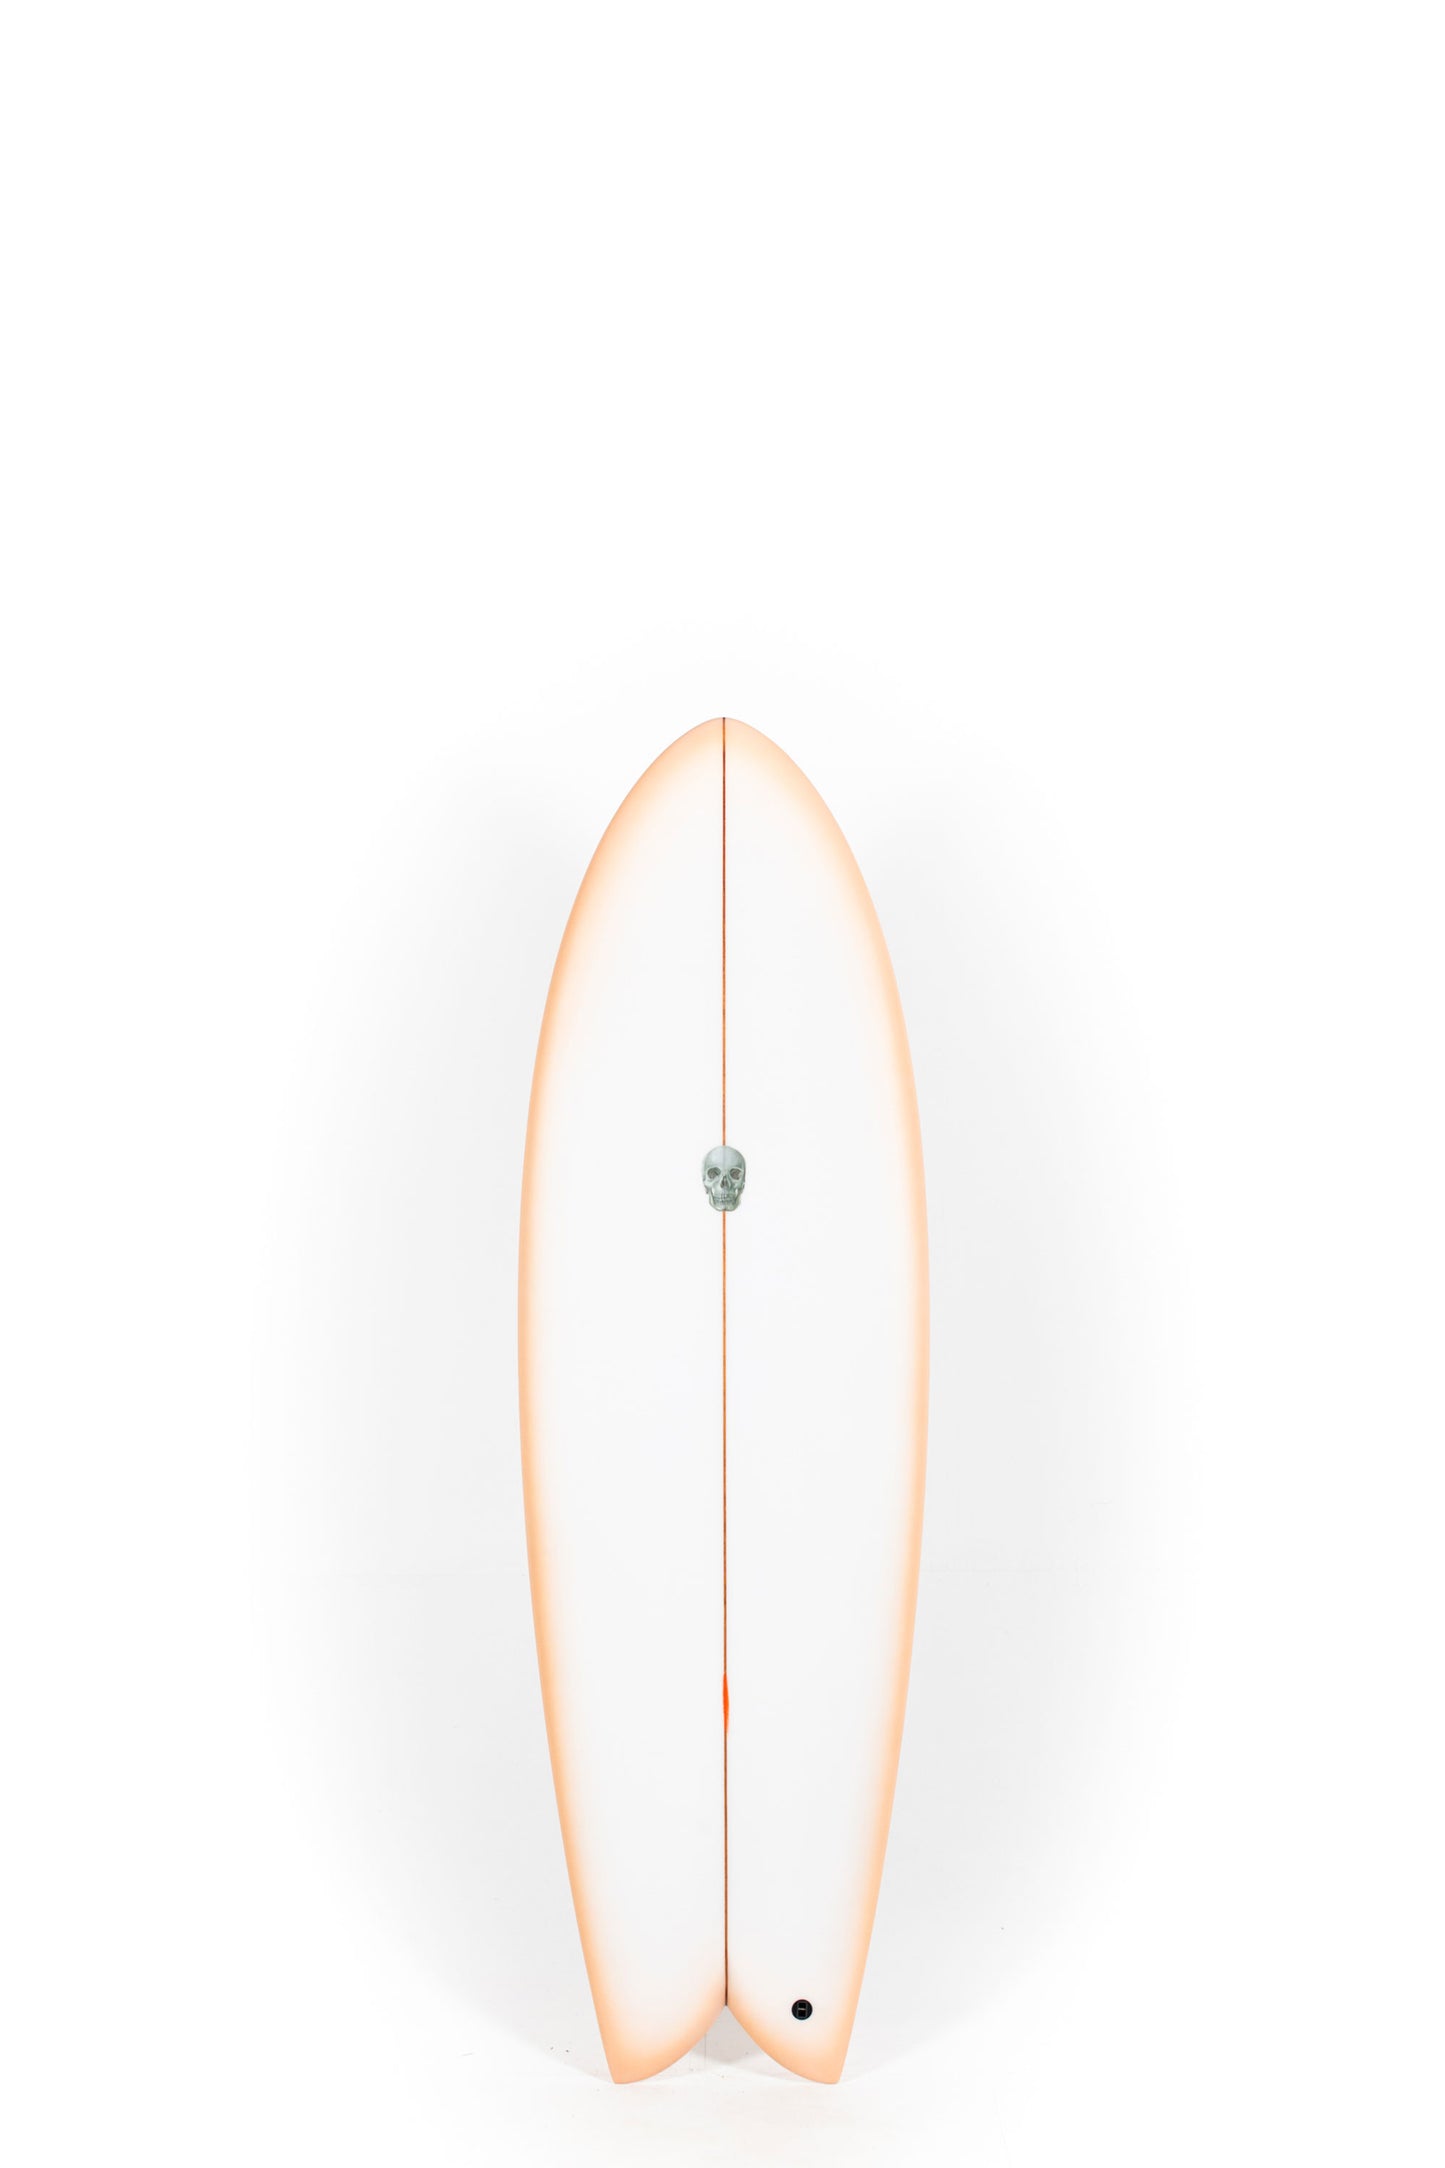 Pukas Surf Shop  - Christenson Surfboards - MYCONAUT - 5'9" x 21 x 2 9/16 - CX04347